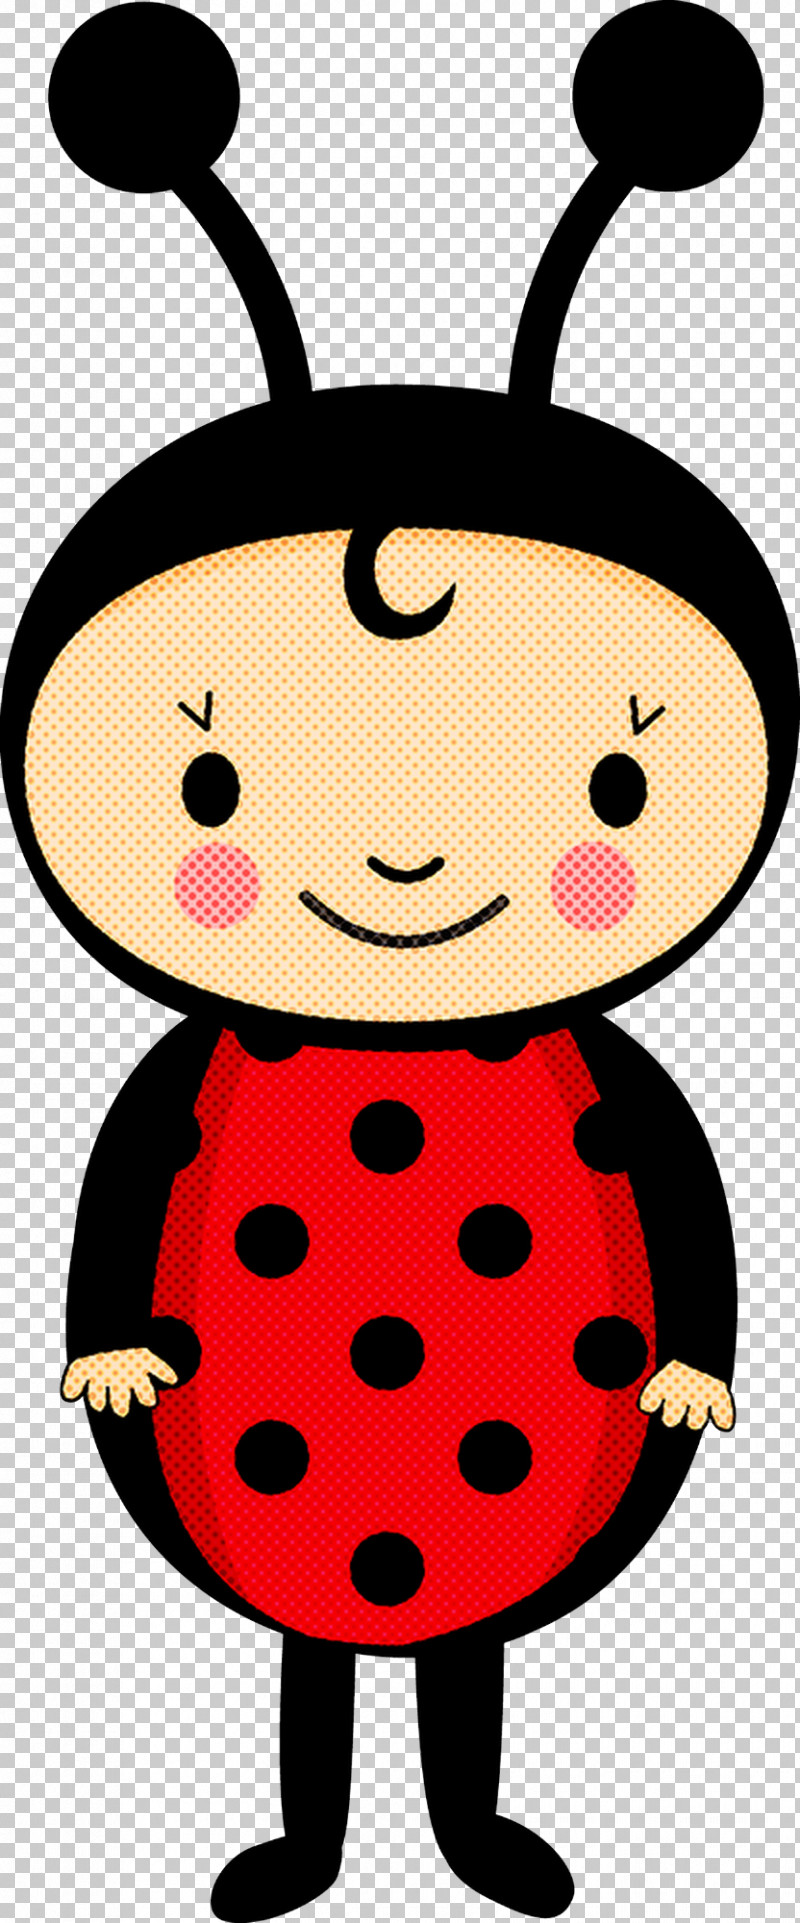 Polka Dot PNG, Clipart, Black Hair, Cartoon, Cheek, Polka Dot, Smile Free PNG Download